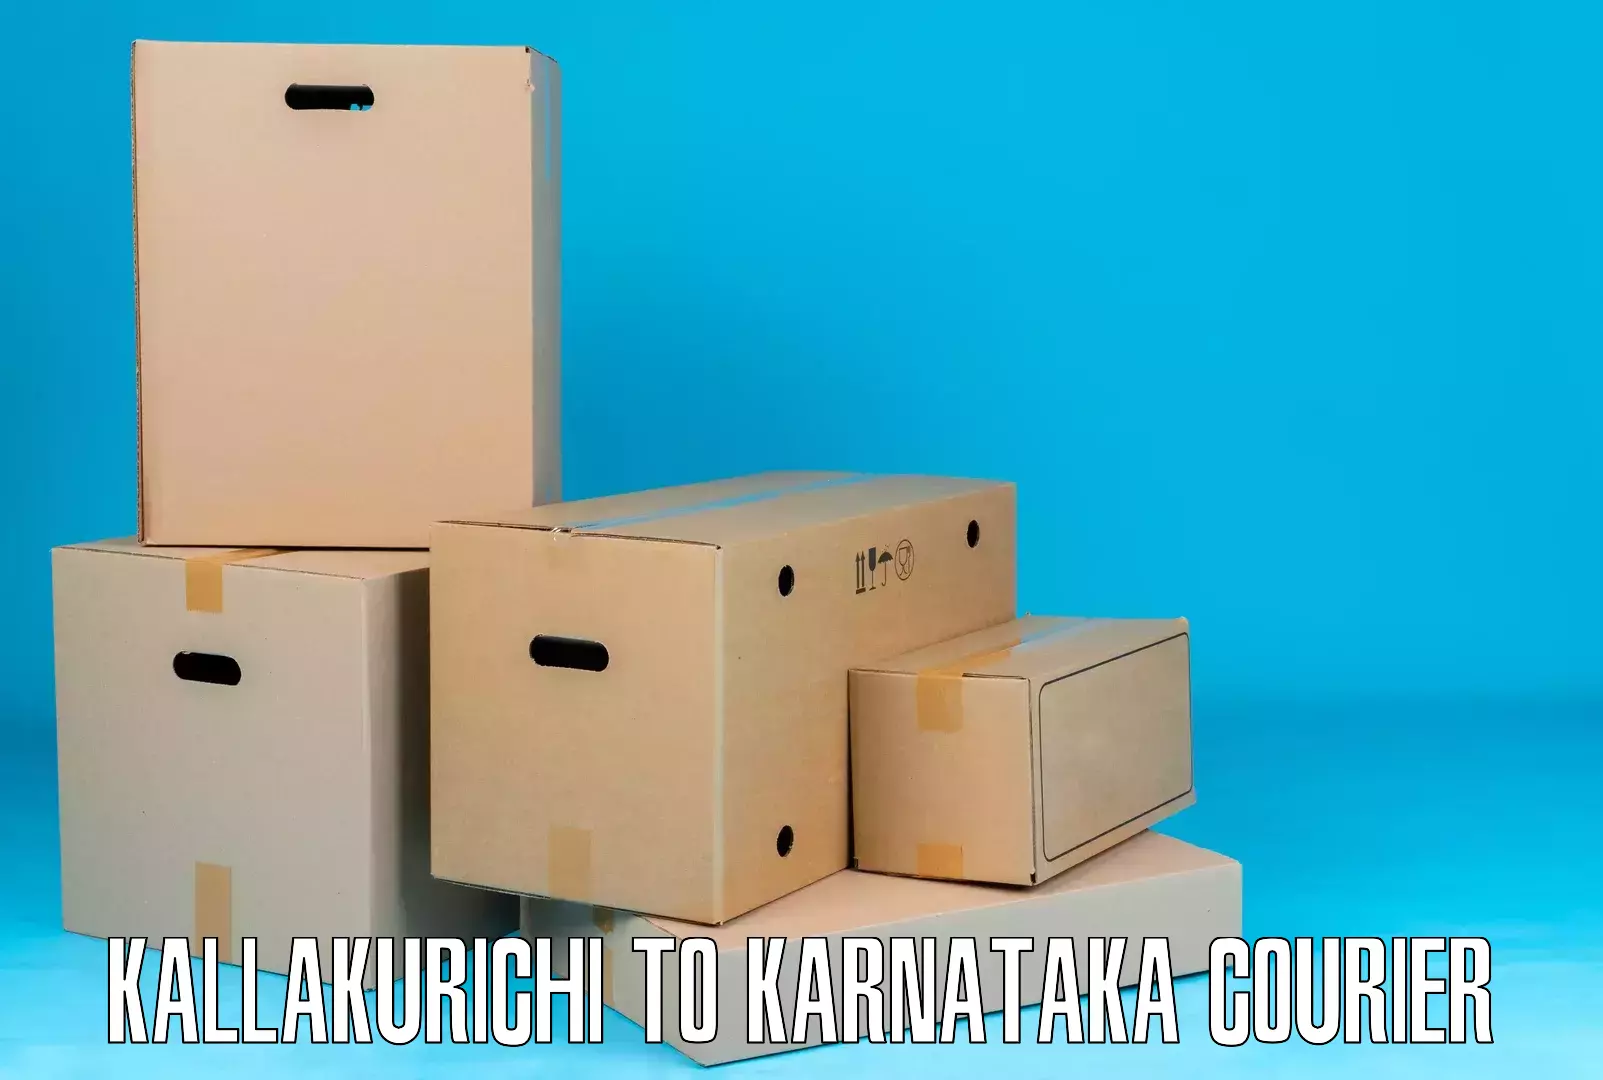 Holiday shipping services Kallakurichi to Karnataka